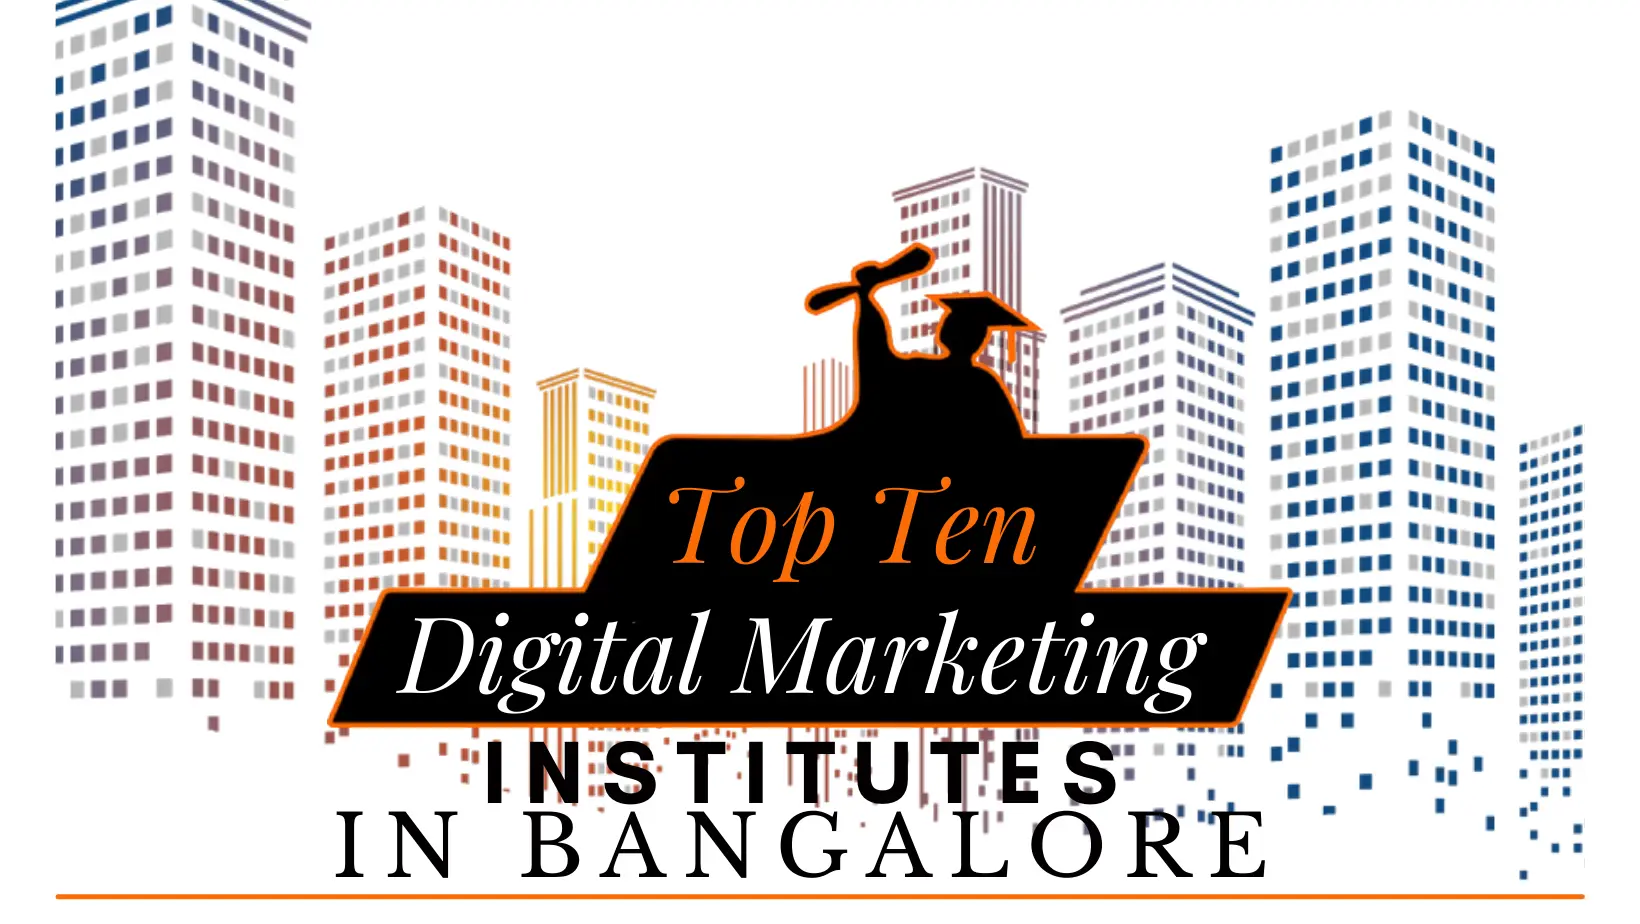 Digital Marketing Institutes